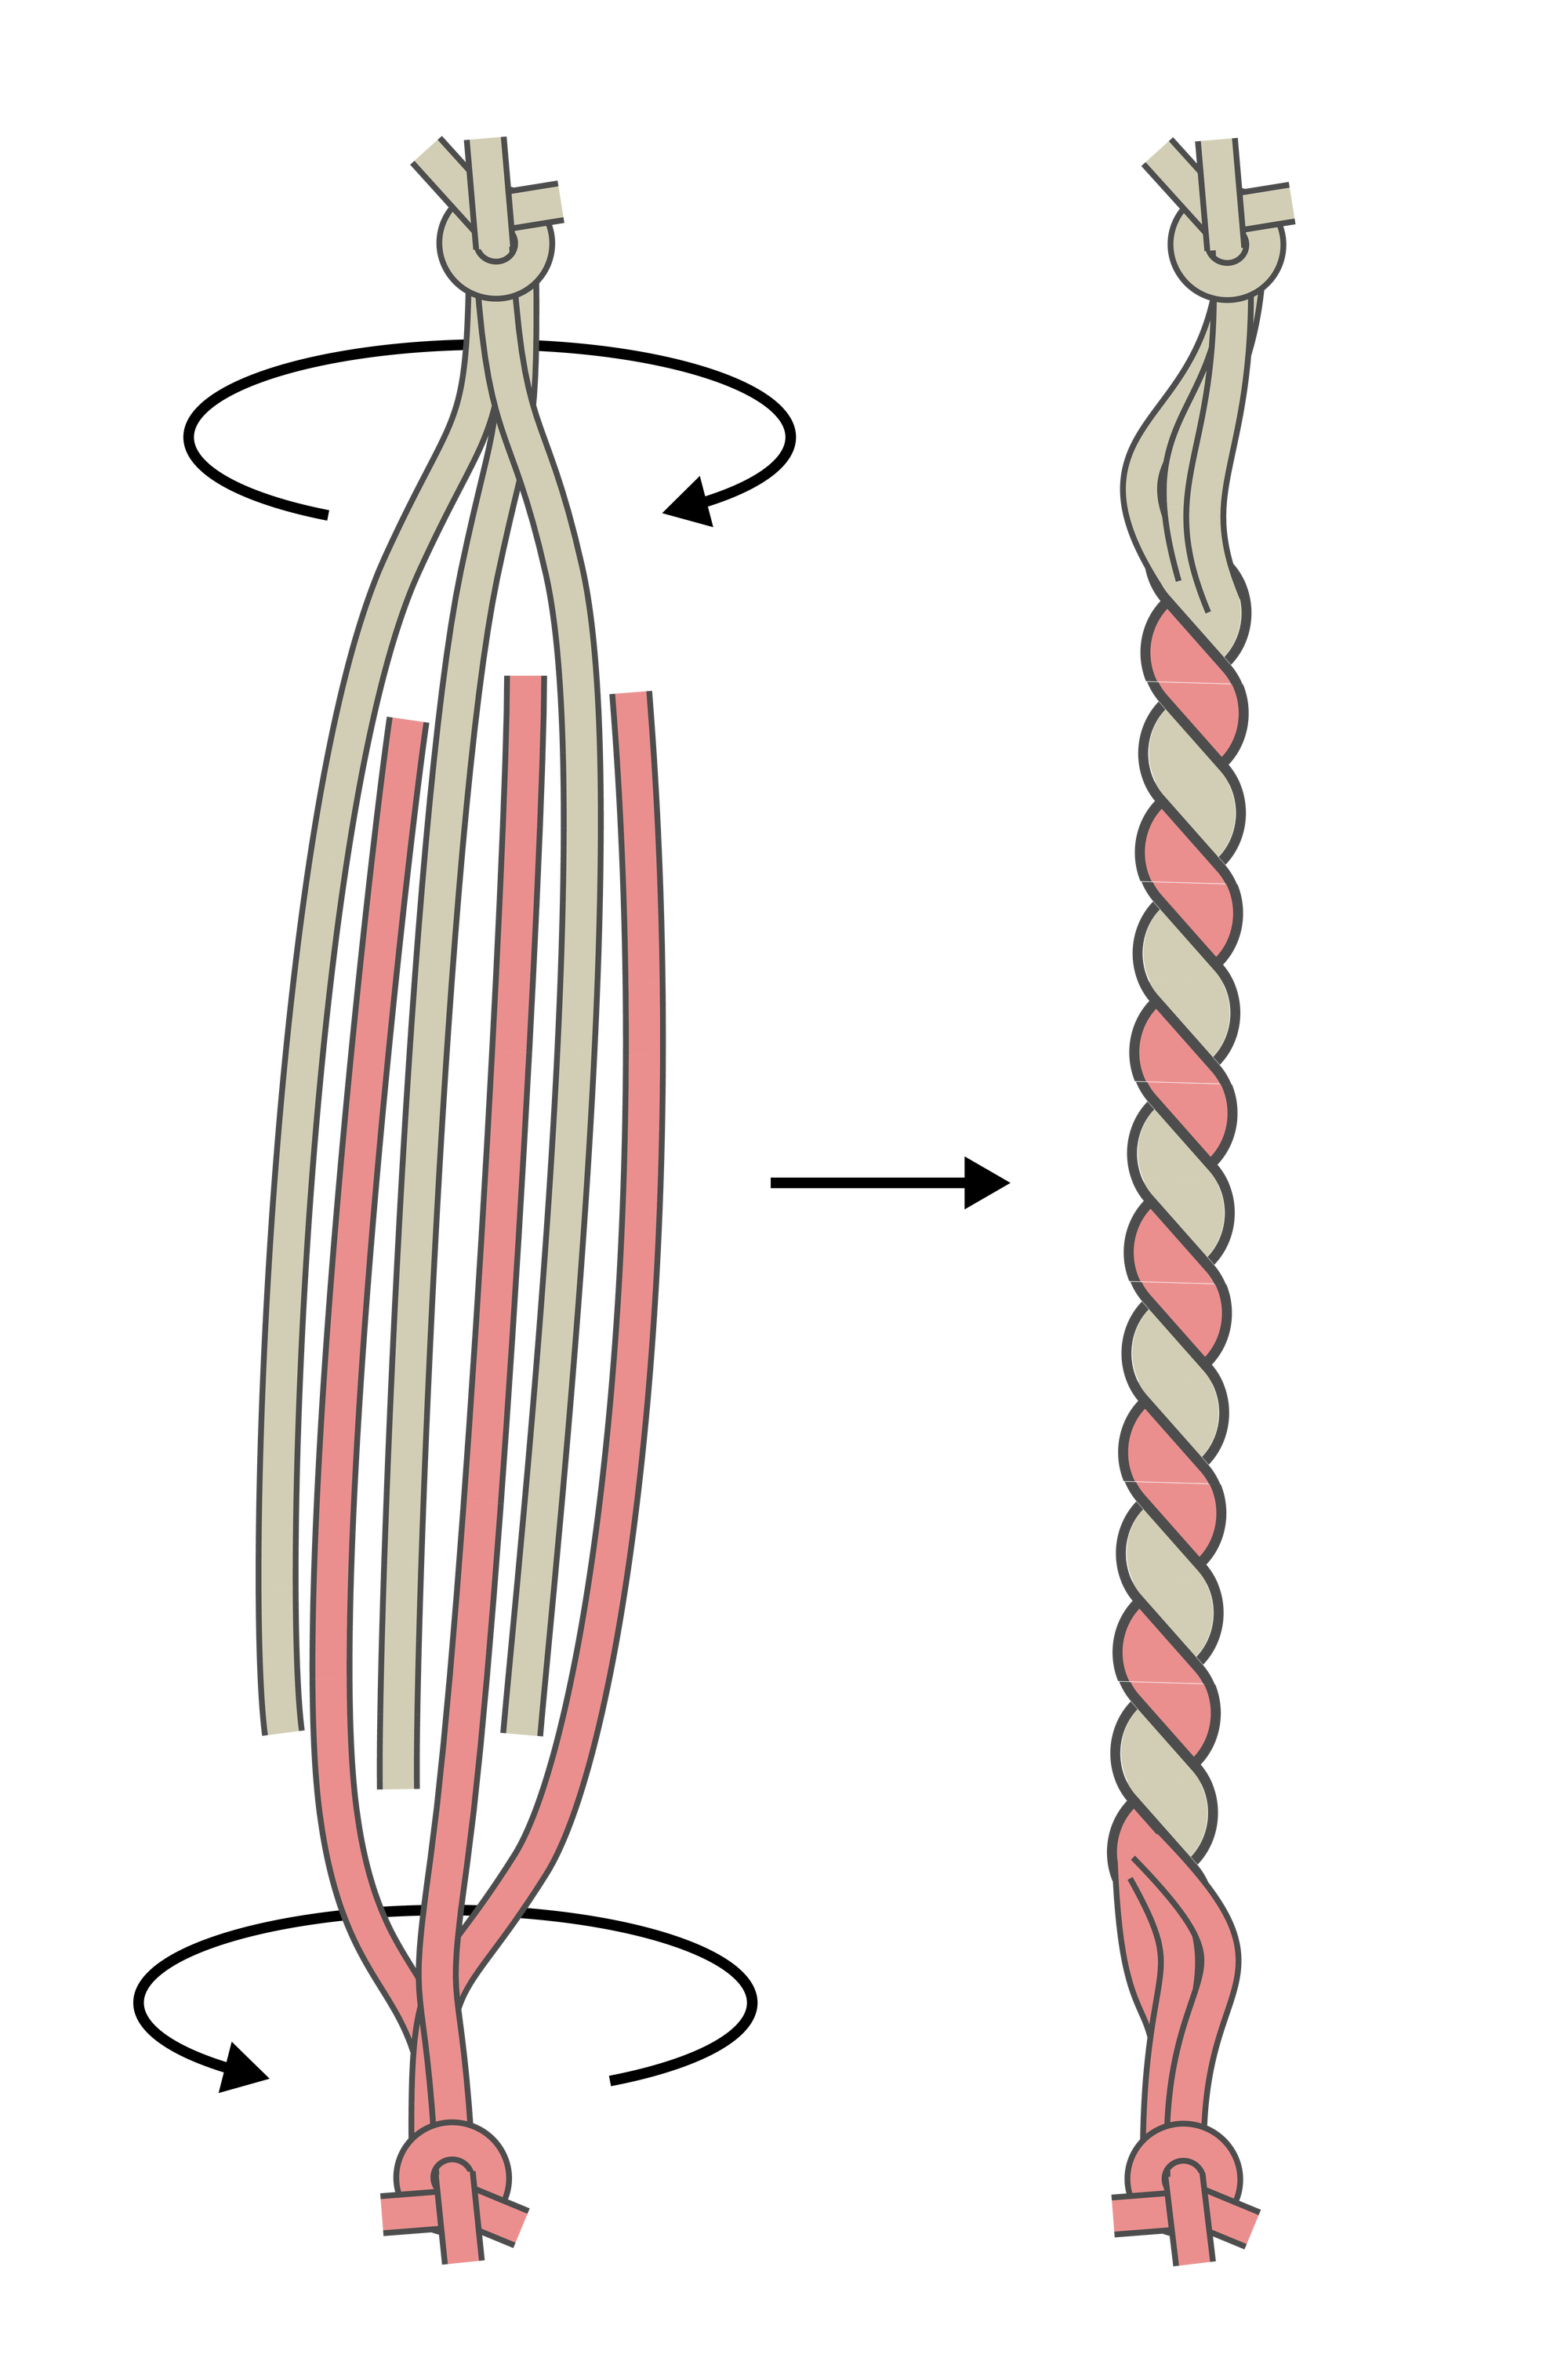 Illustration von je drei roten und grünen Fäden, die gegeneinander verdreht werden